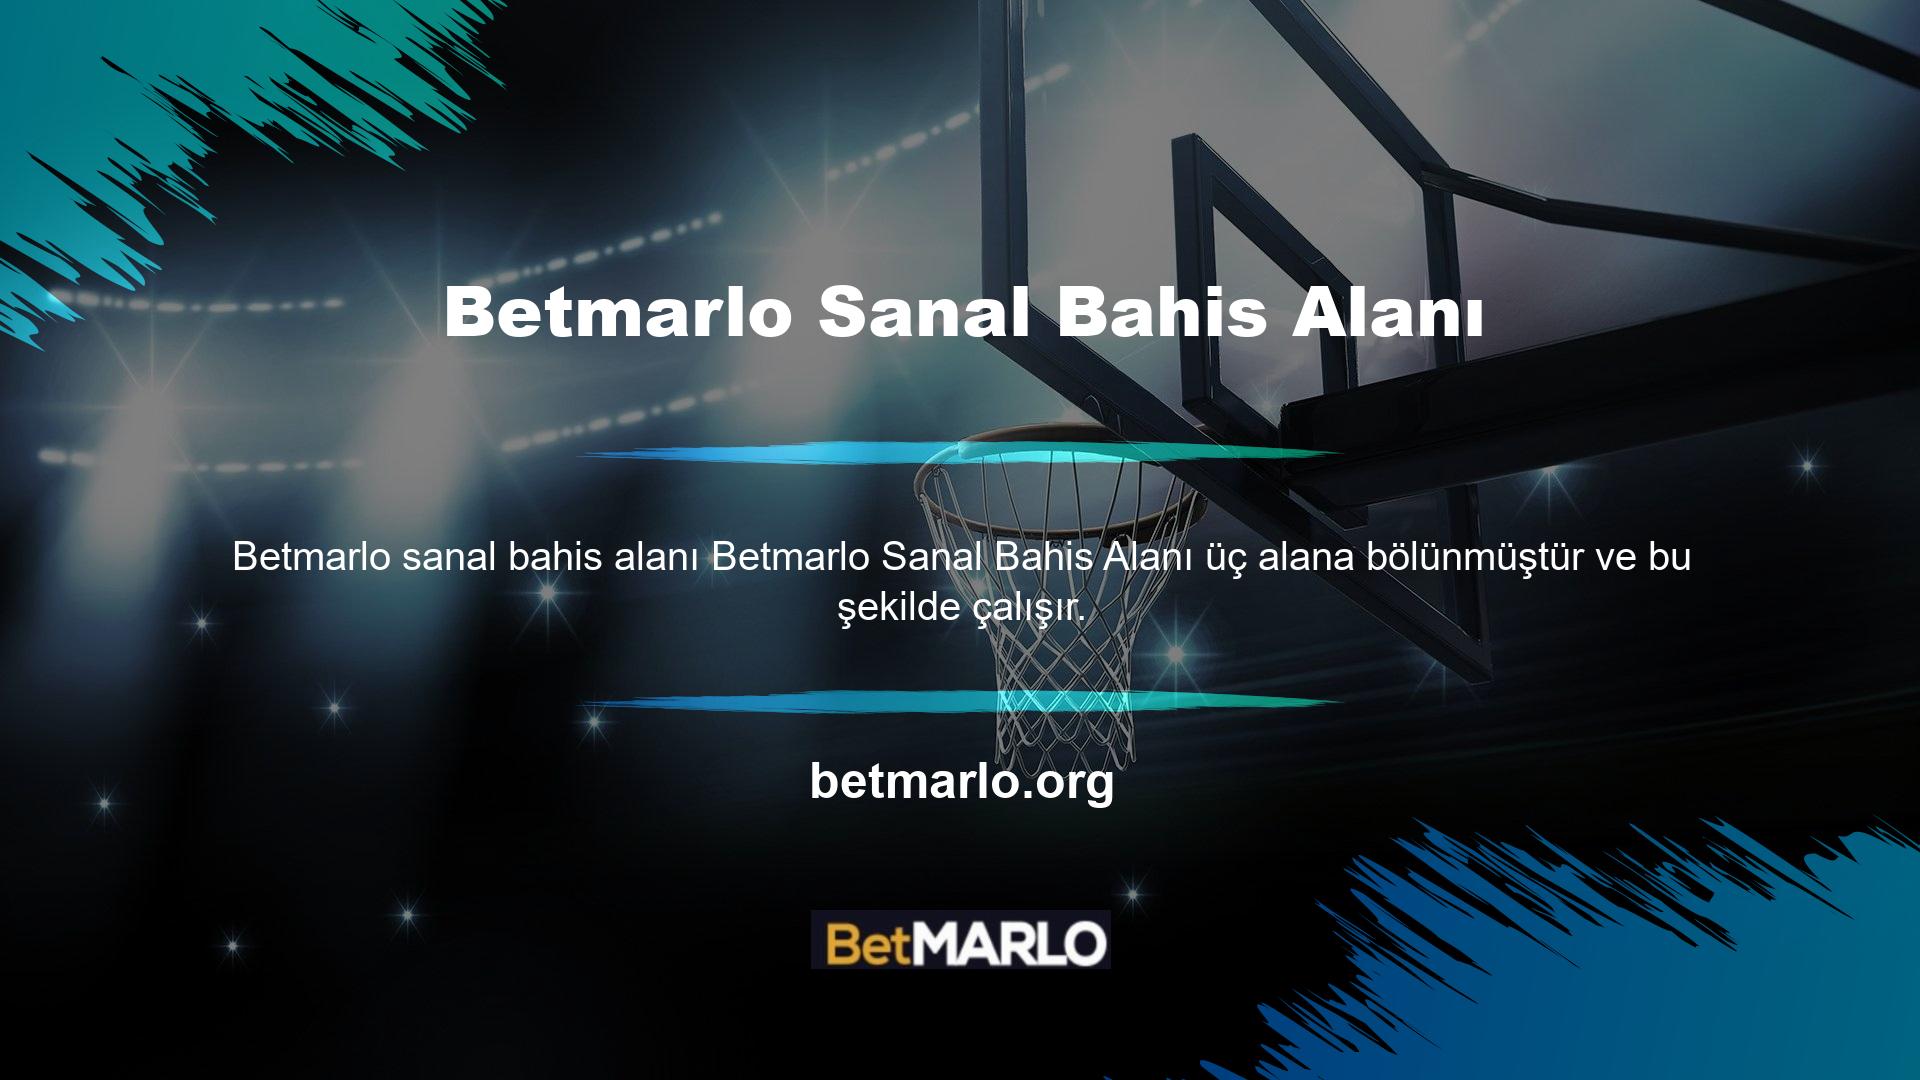 Betmarlo sanal bahis alanında üç bölüm vardır: at yarışı, tazı yarışı ve futbol bahisleri